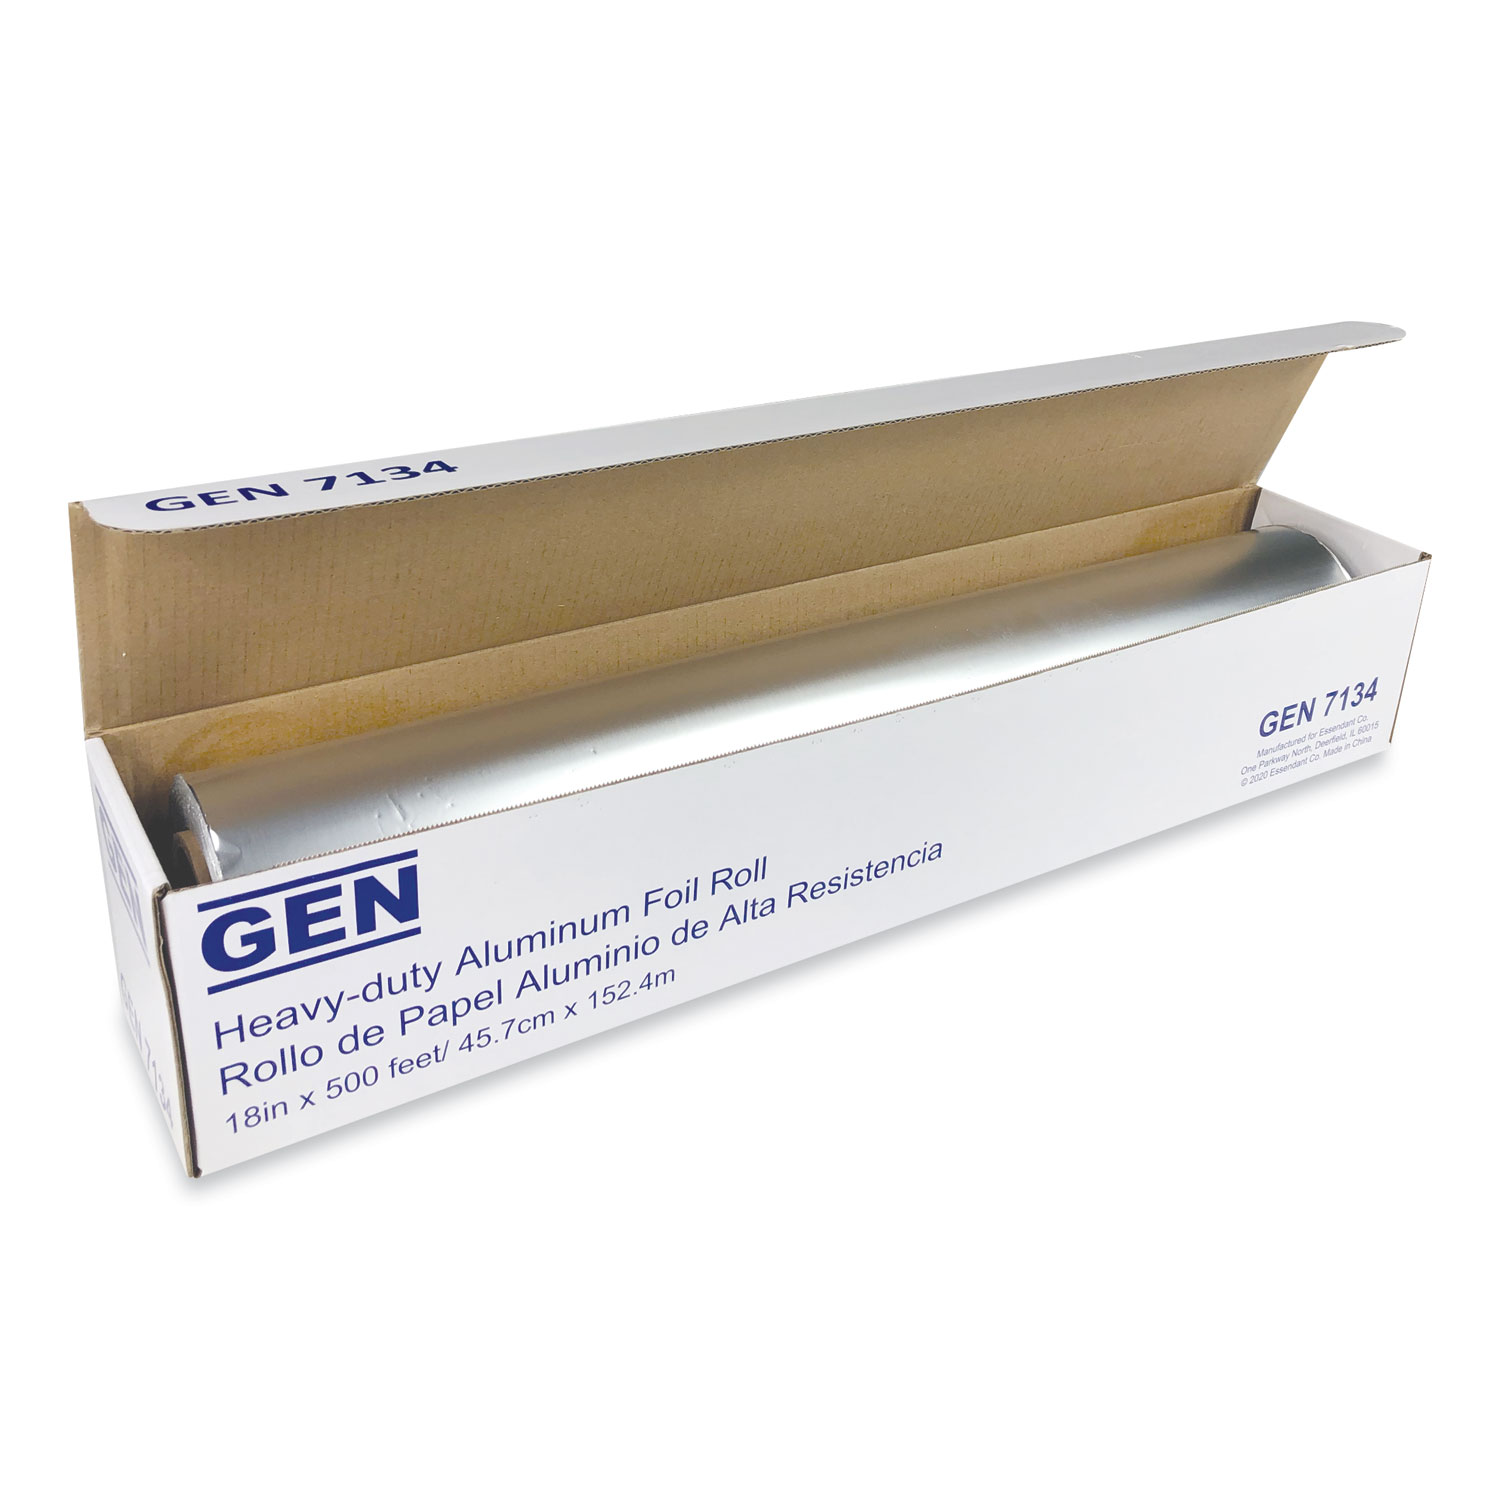 GEN Heavy-Duty Aluminum Foil Roll, 18 x 500 ft, 4/Carton